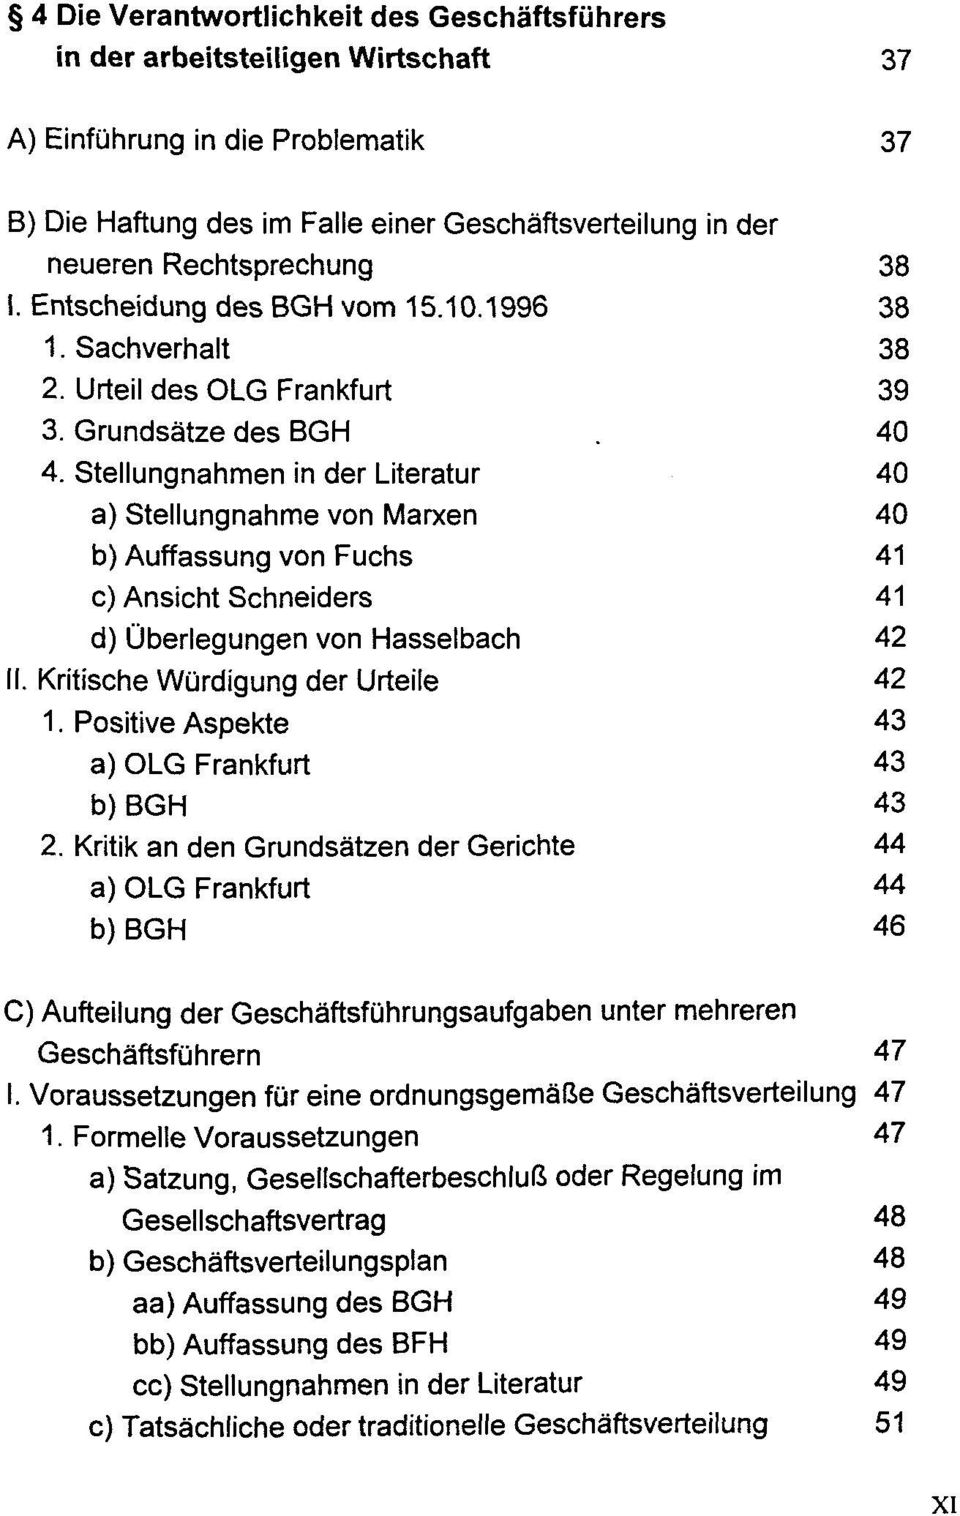 Stellungnahmen in der Literatur 40 a) Stellungnahme von Marxen 40 b) Auffassung von Fuchs 41 c) Ansicht Schneiders 41 d) Ùberlegungen von Hasselbach 42 II. Kritische Wùrdigung der Urteile 42 1.